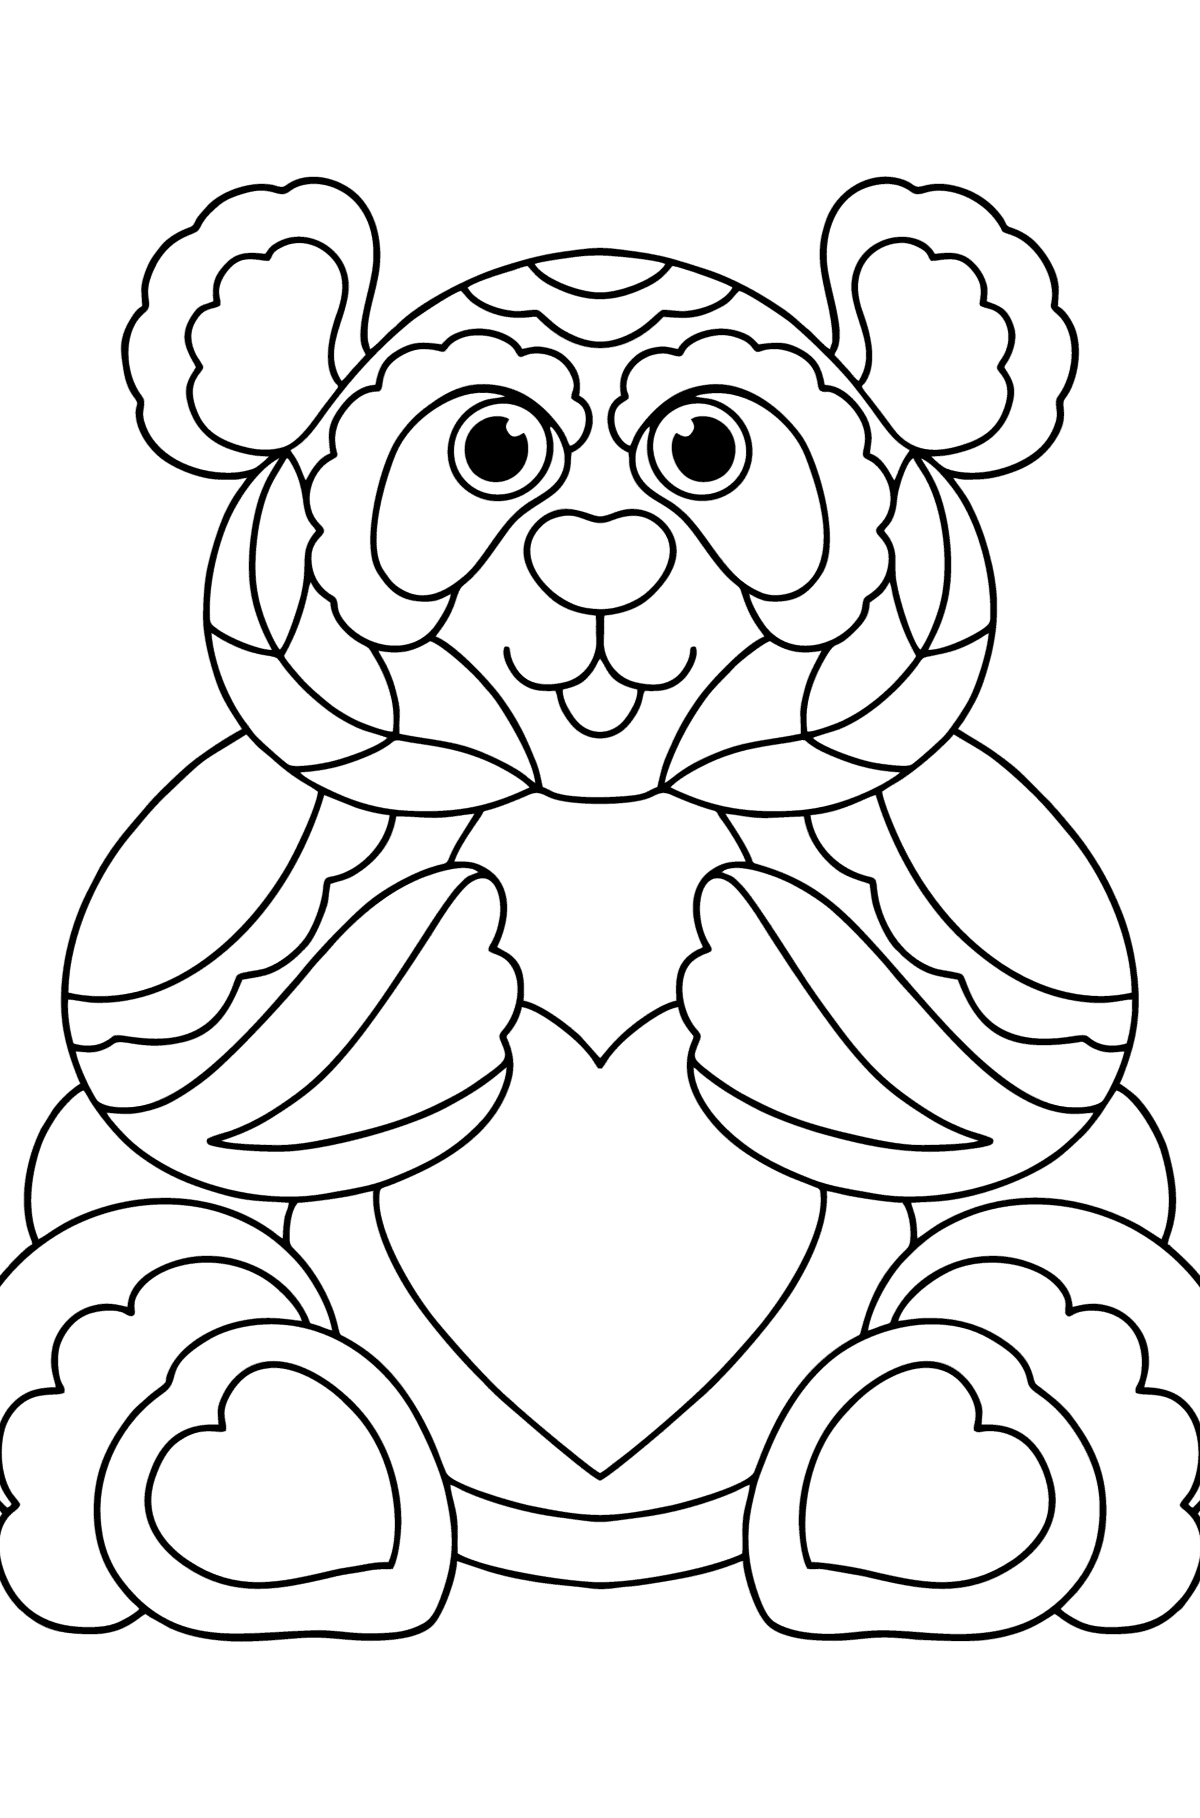 Desen de colorat panda antistres - Desene de colorat pentru copii